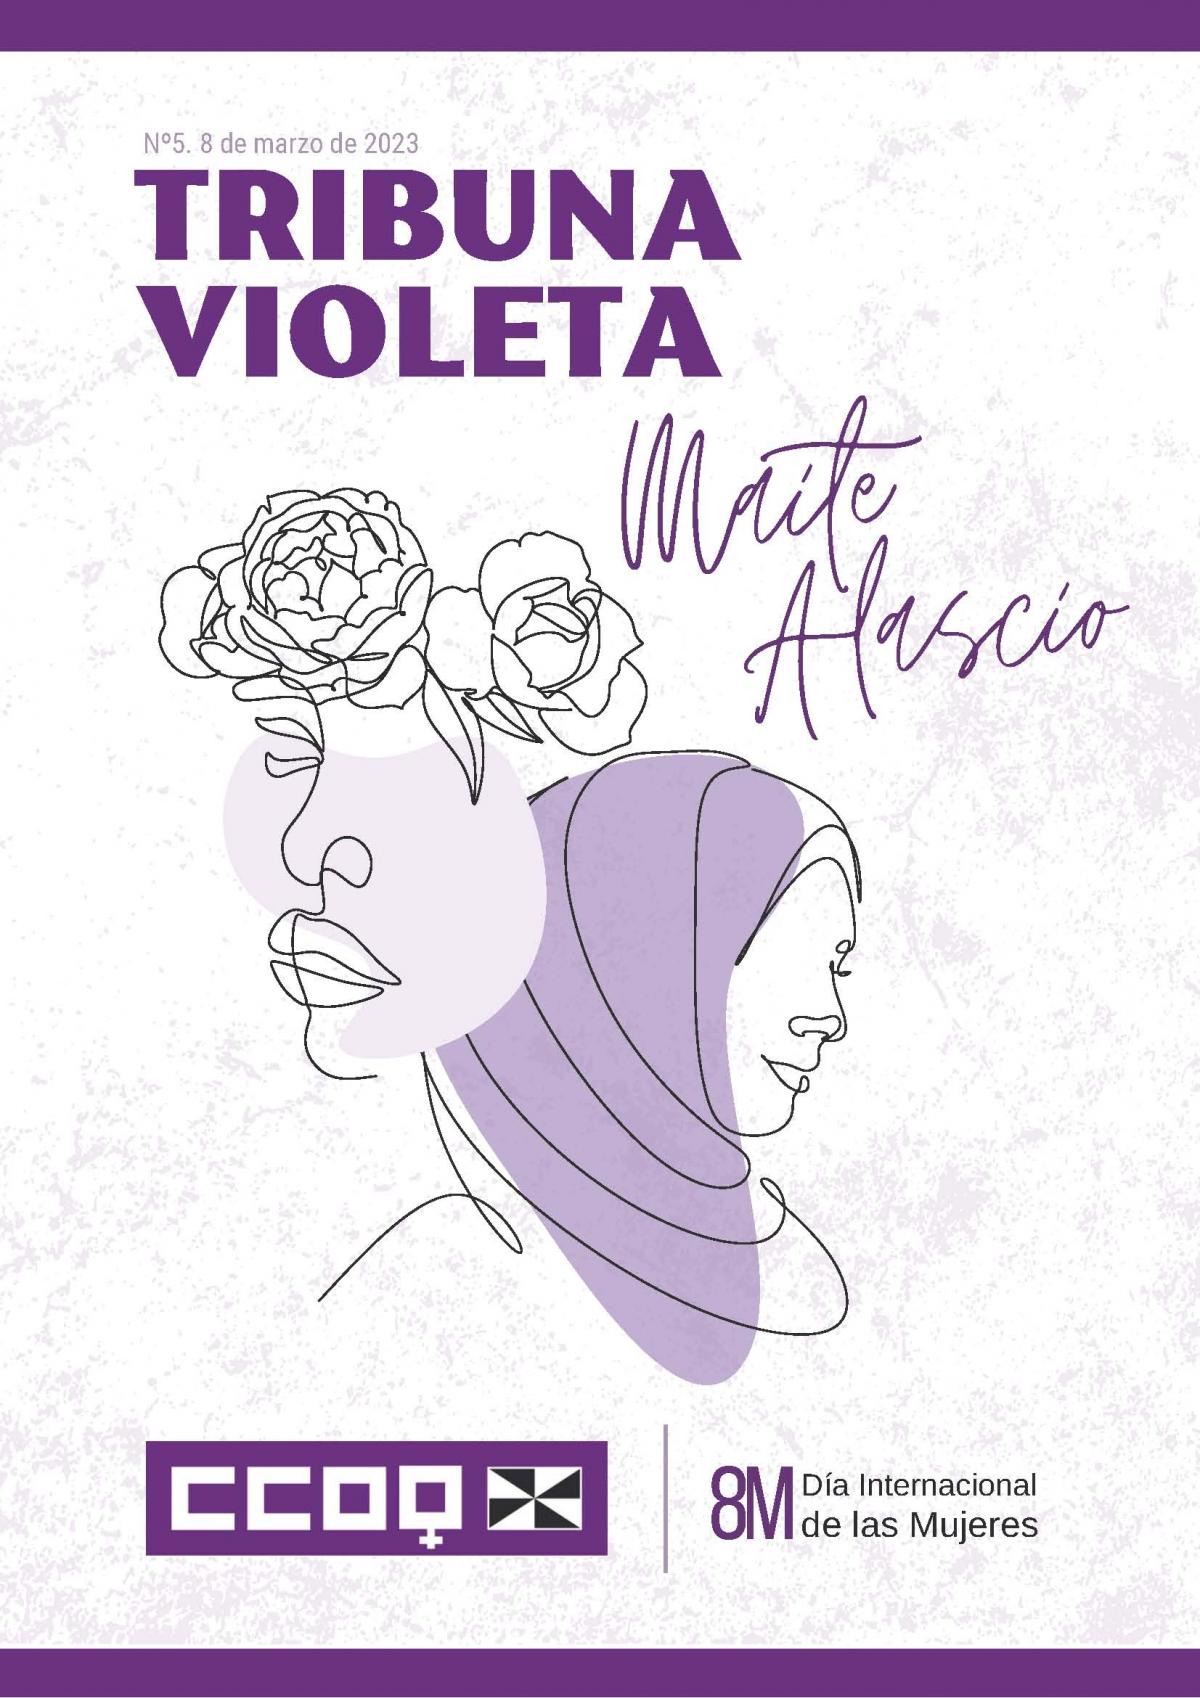 "Tribuna Violeta Maite Alascio", n. 5 (marzo de 2023).